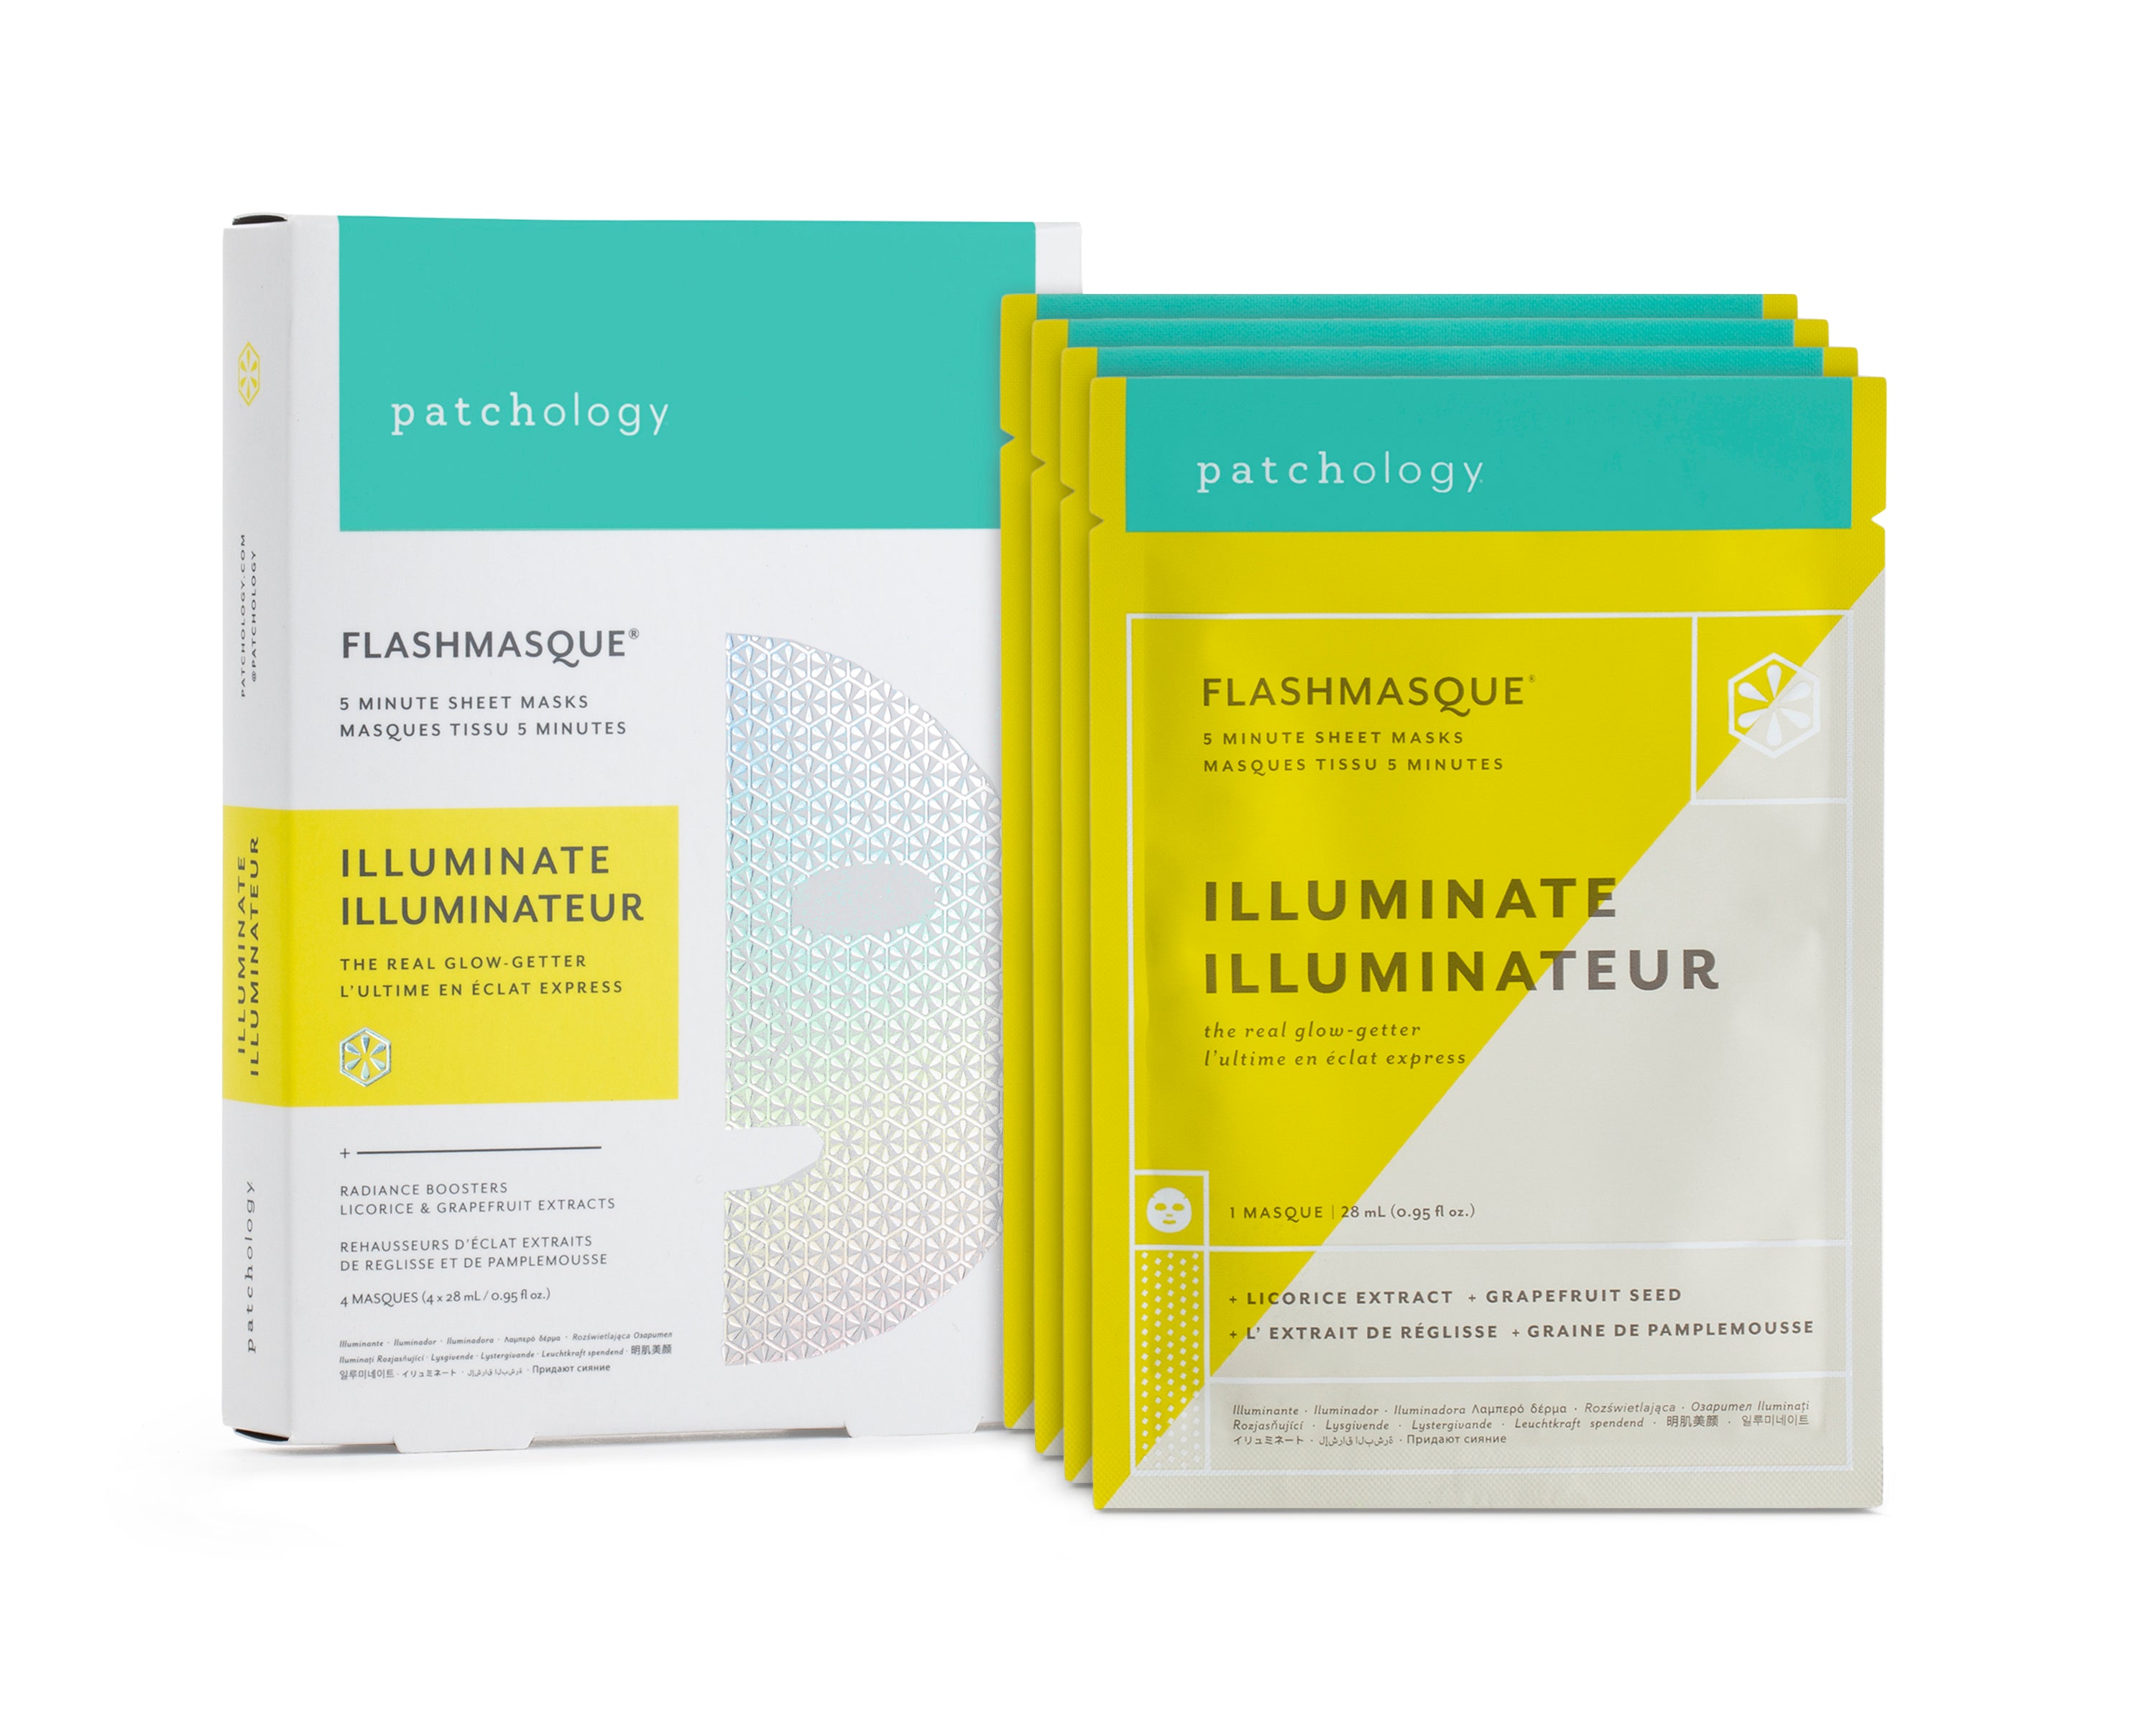 FlashMasque® Illuminate 5-Minute Sheet Mask